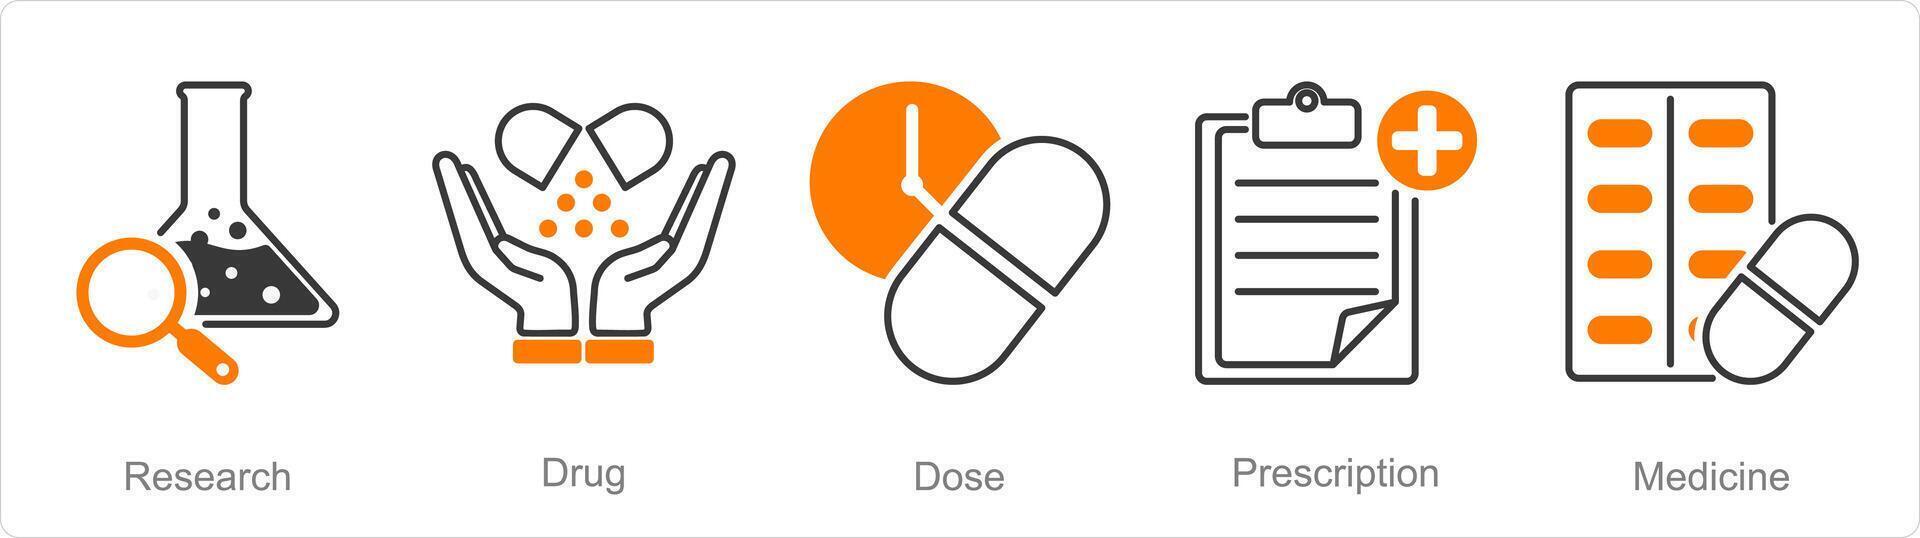 en uppsättning av 5 apotek ikoner som forskning, läkemedel, dos vektor